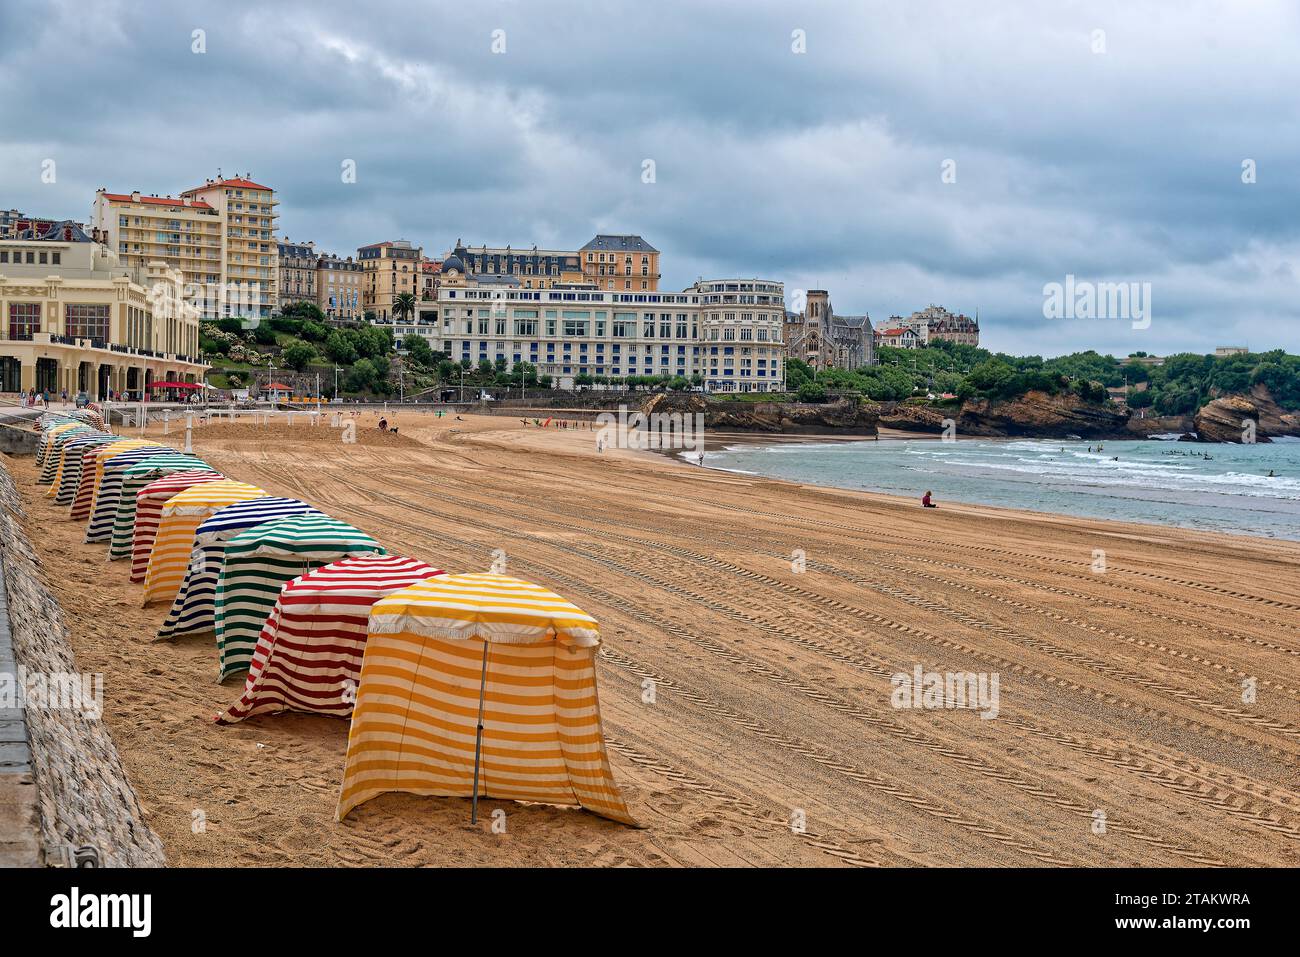 la plage de biarritz au pays basque francais en ete apres la pluie avec quelqus vacanciers et surfers Foto Stock